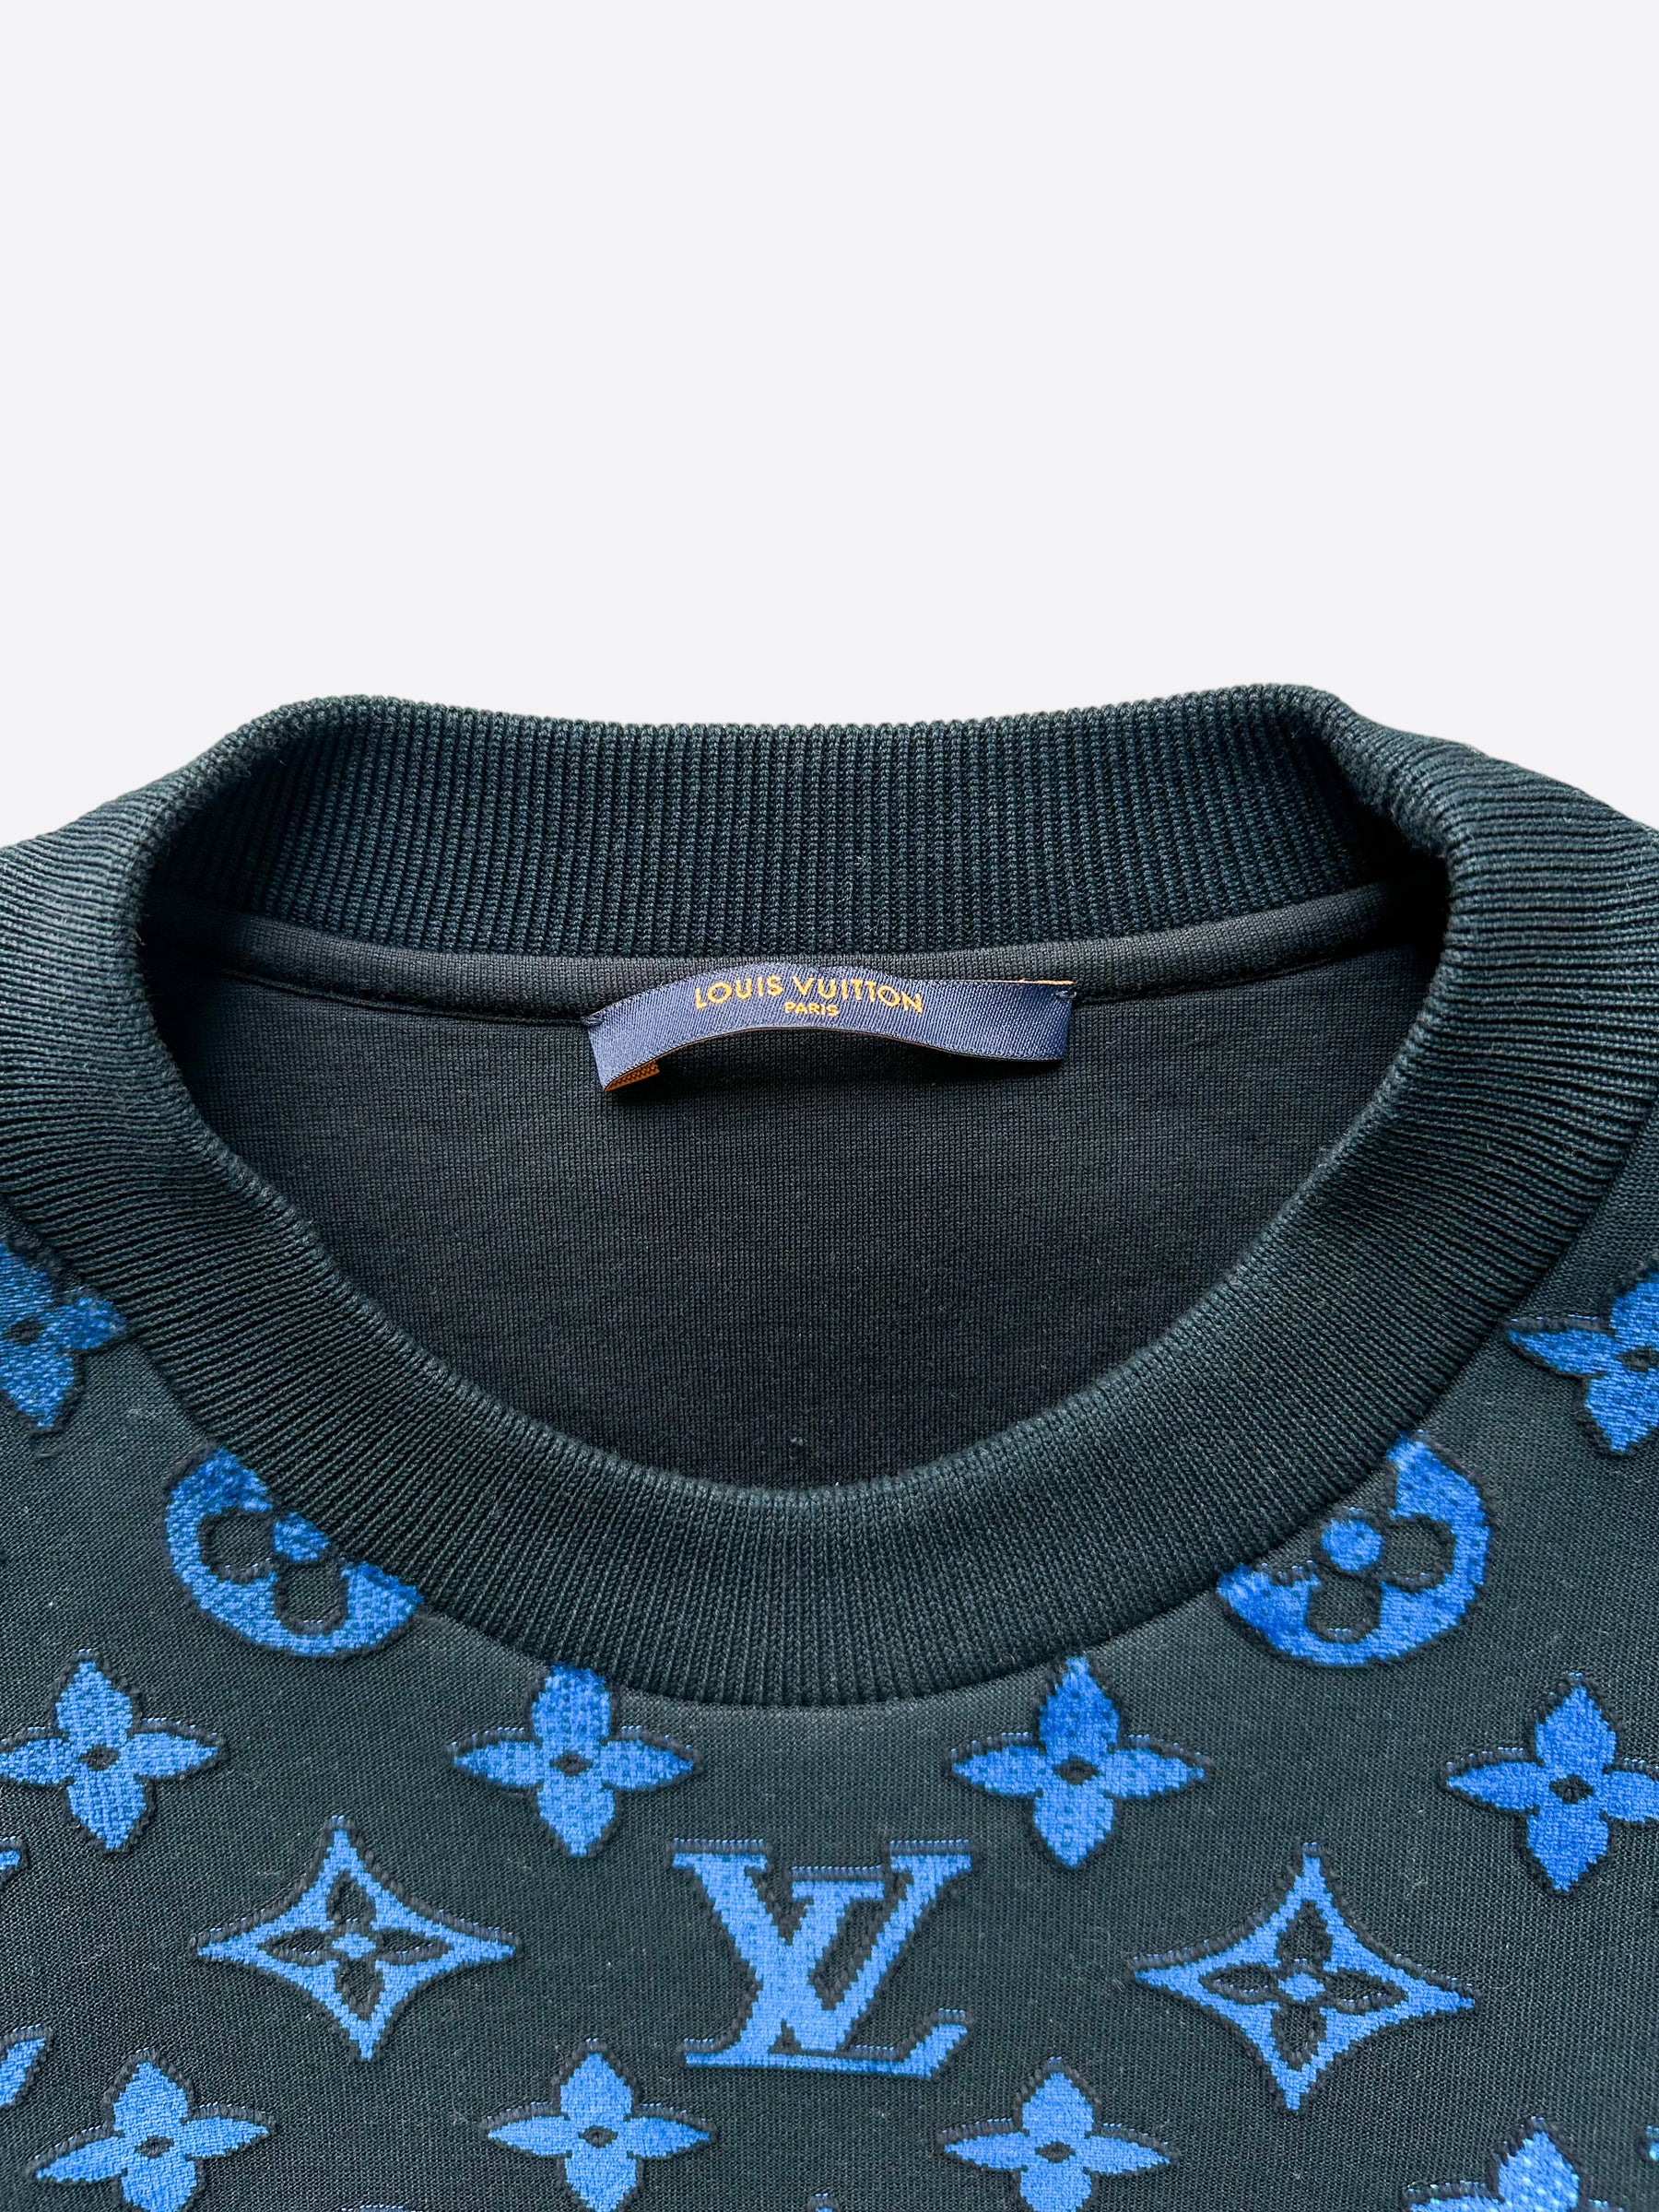 lv monogram sweatshirt blue